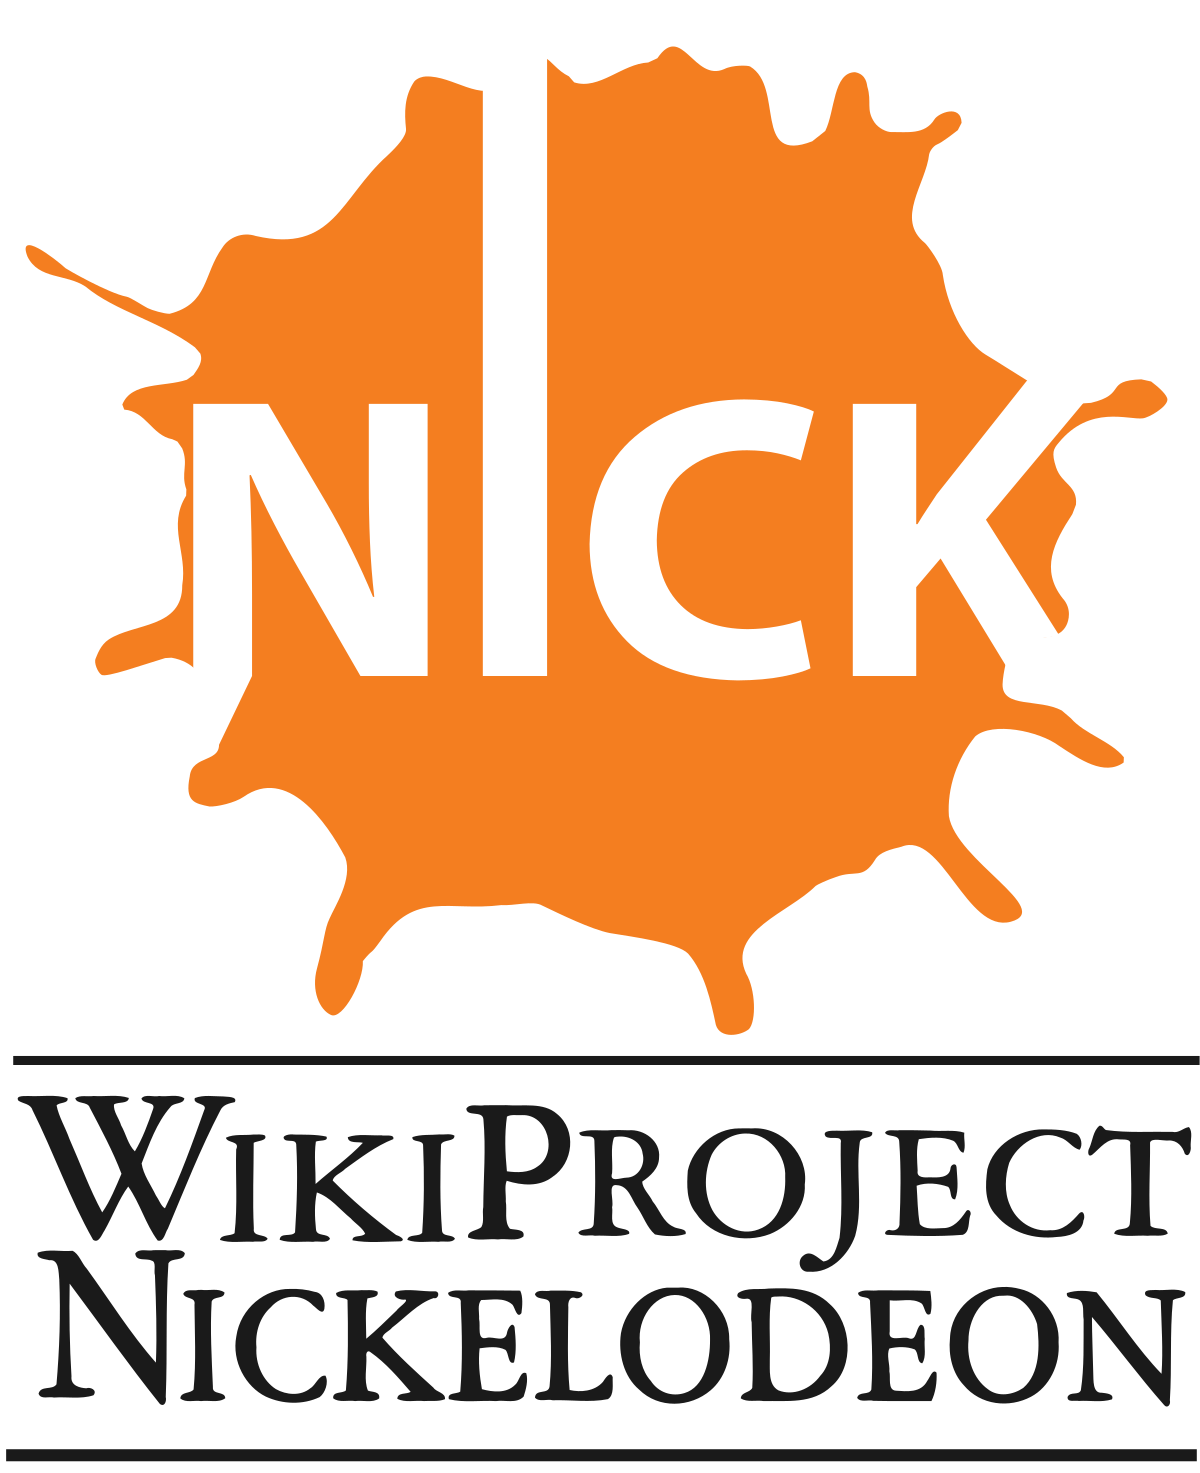 Nickelodeon - Wikipedia